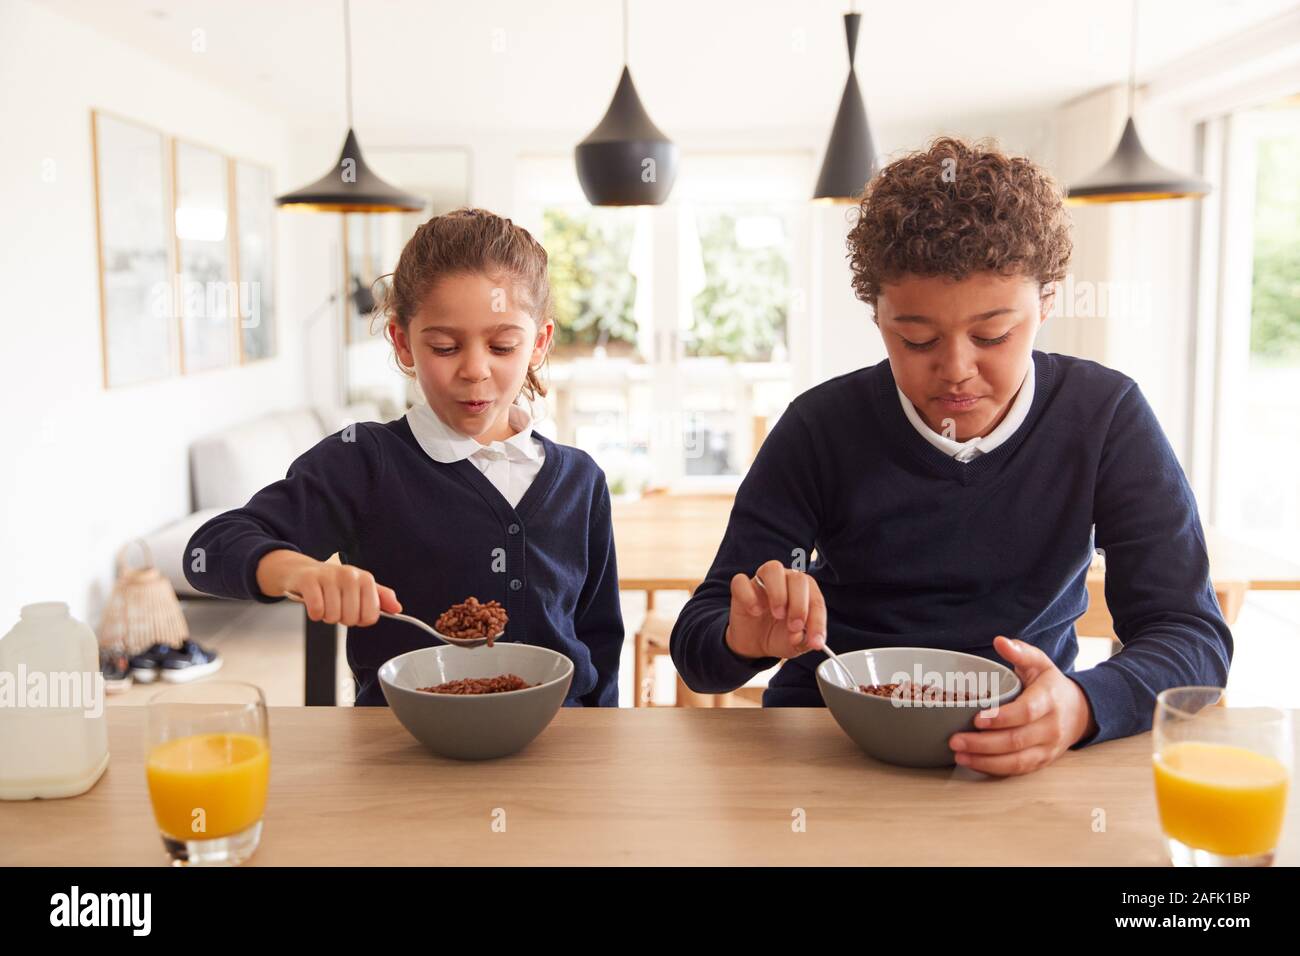 Kinder In der Küche Essen der zuckerhaltigen Frühstück, bevor Sie in die Schule gehen Stockfoto